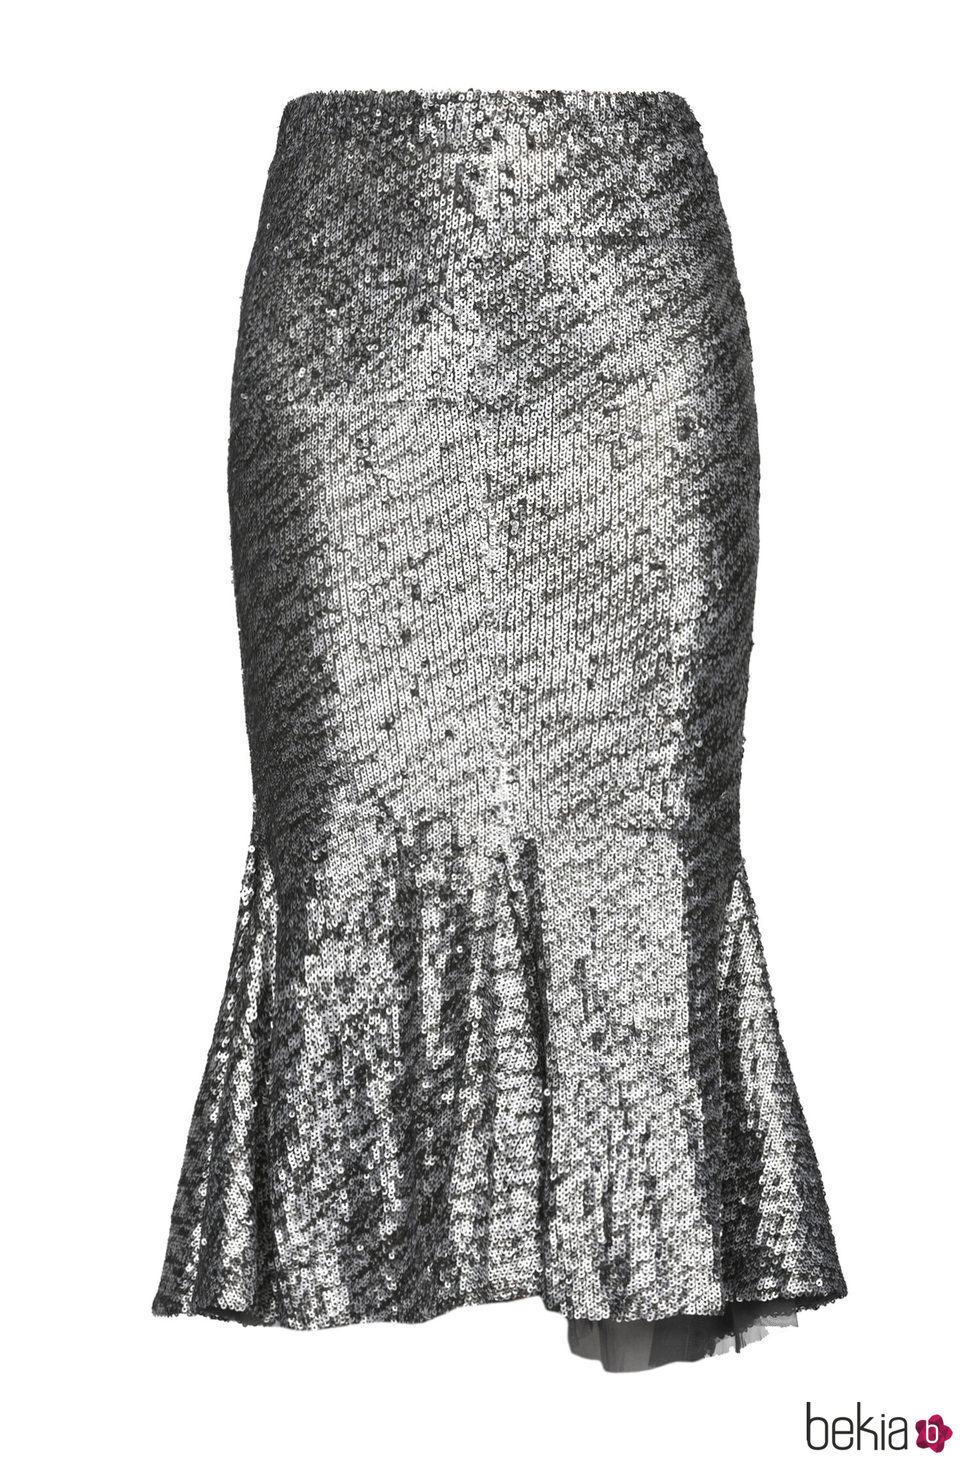 Falda larga de lentejuelas de Pinko de la colección para esta Navidad 2017